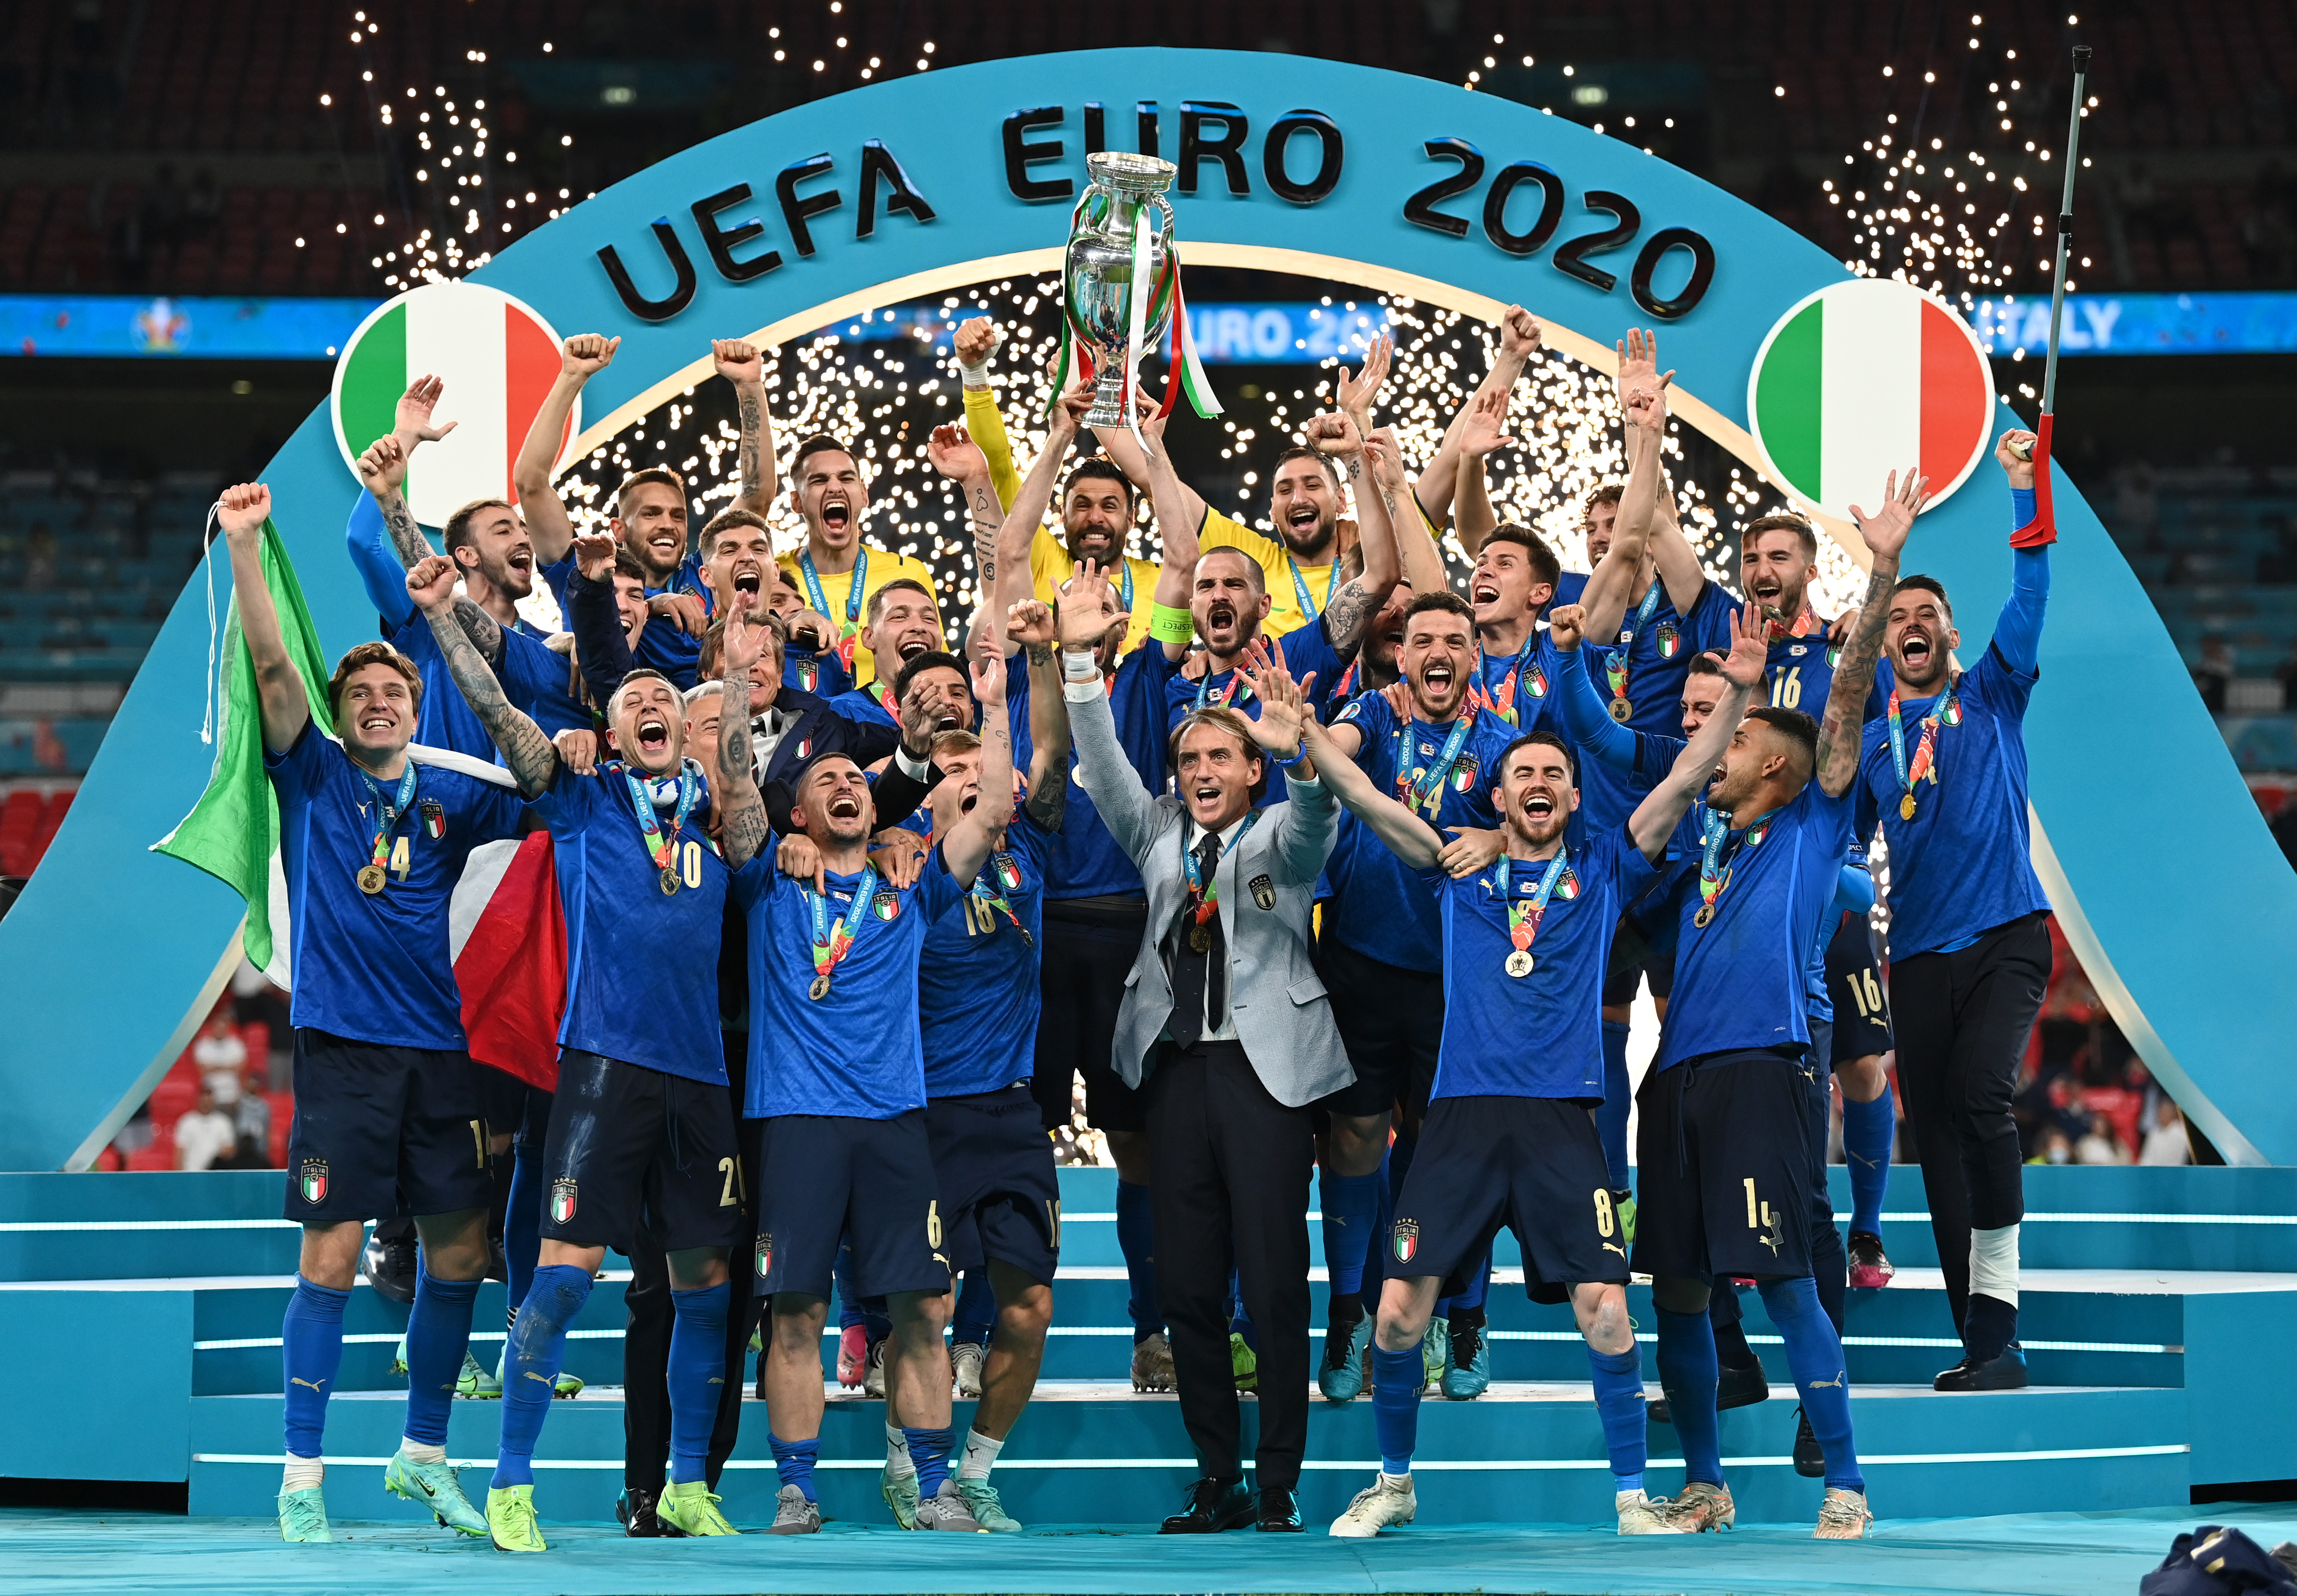 53年后意大利逆转夺冠! 海信激光电视欧洲杯冠军之夜见证历史